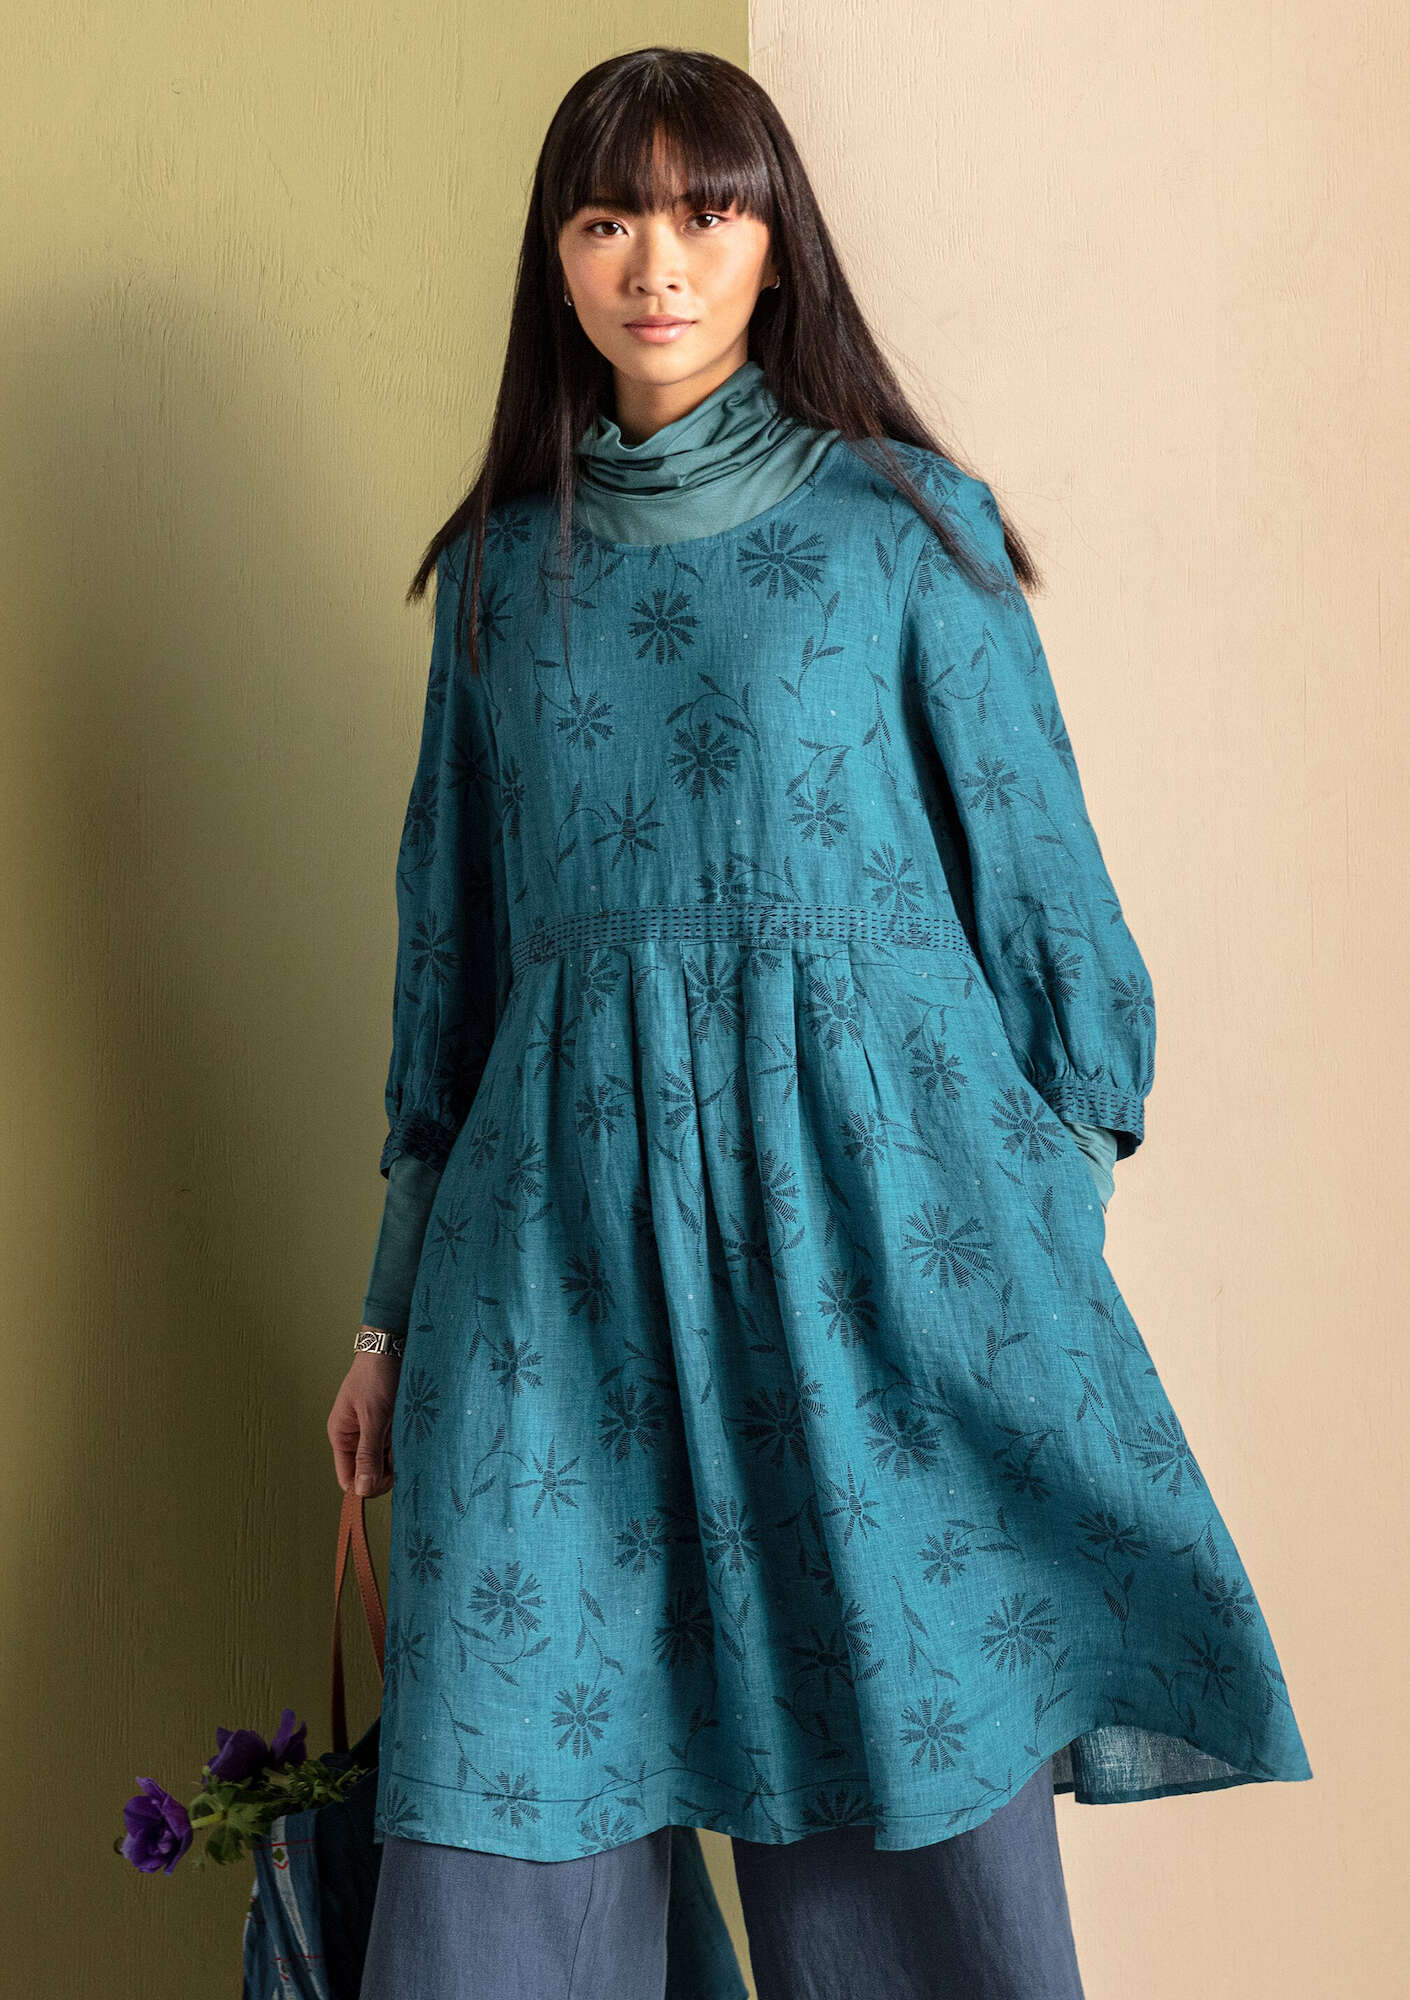 Leia dress indigofera/patterned